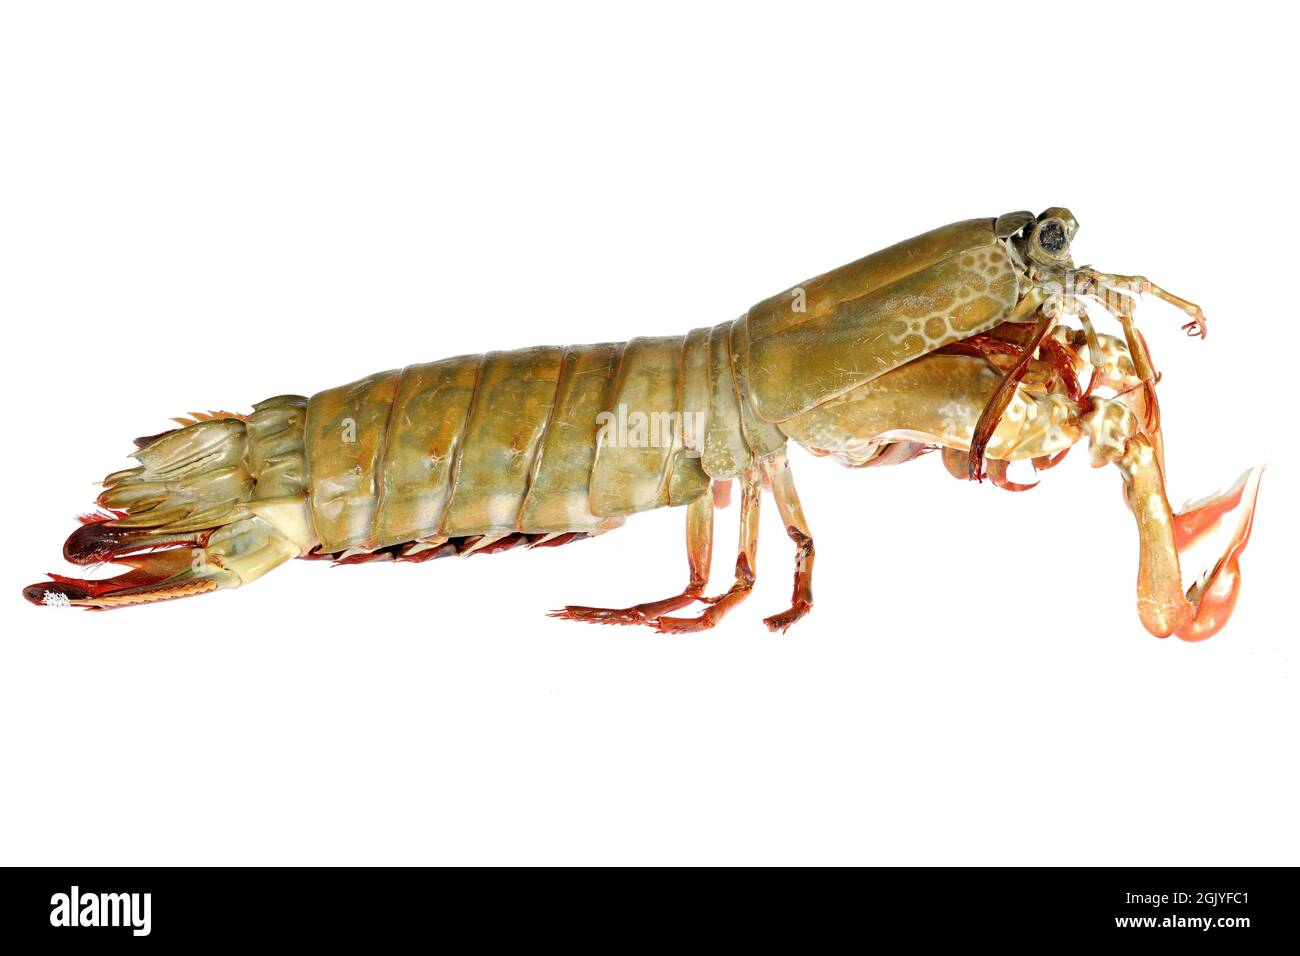 mantis shrimp (Gonodactylus chiragra) from Bohol, Philippines isolated on white background Stock Photo